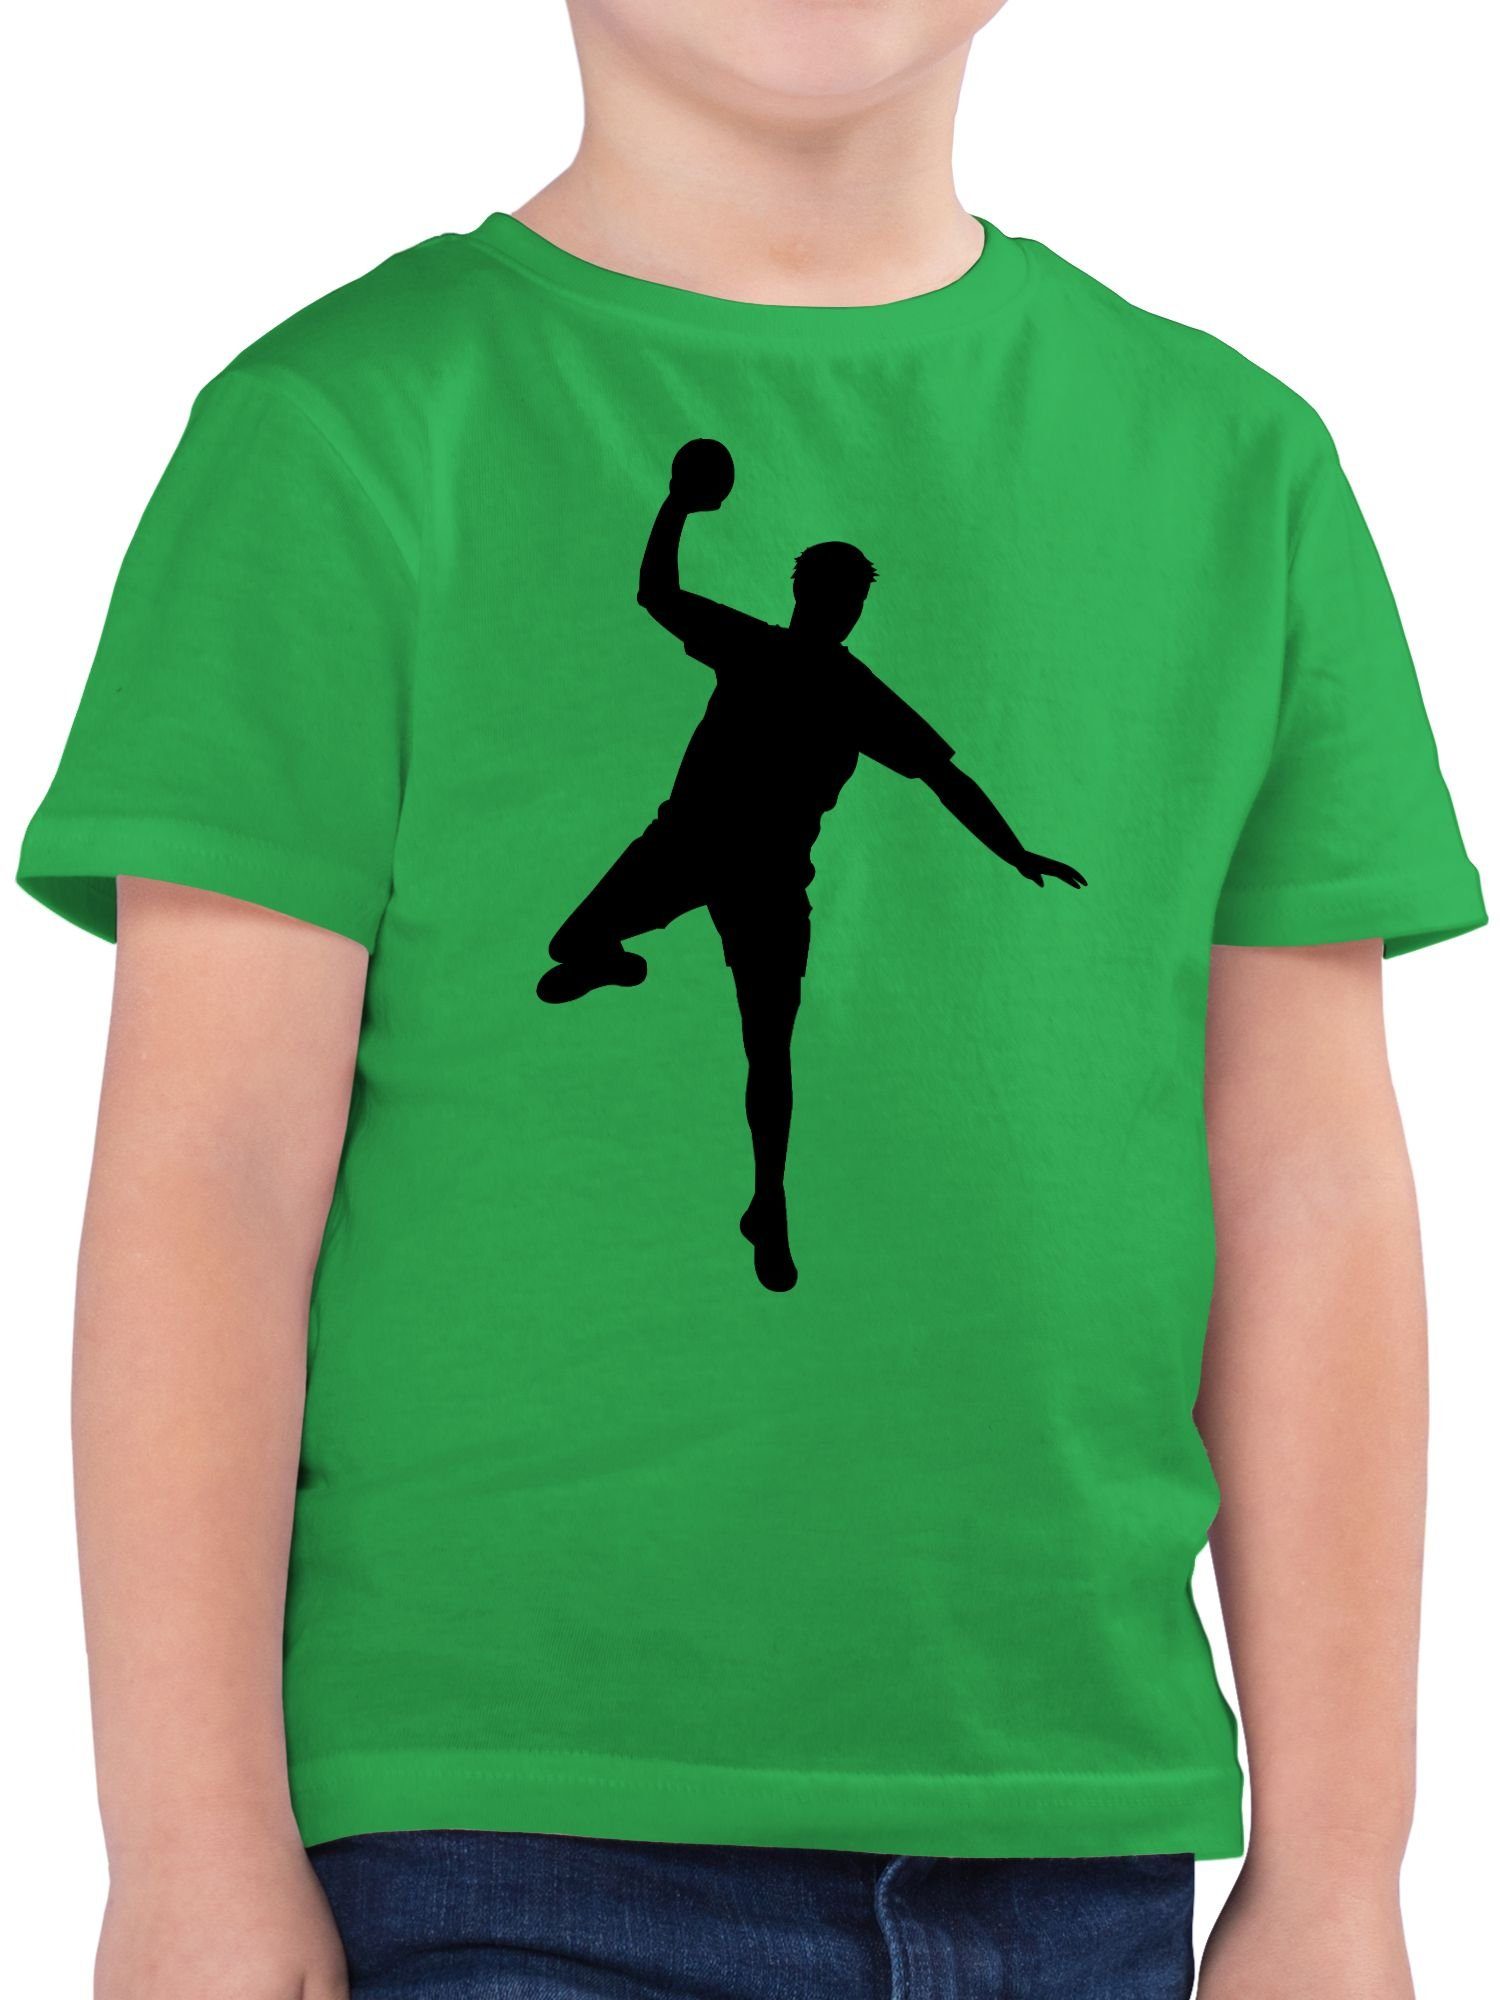 Shirtracer T-Shirt Handball Wurf - Kinder Sport Kleidung - Jungen Kinder T-Shirt  handball wm - grünes tshirt kinder - handball+shirt+kinder